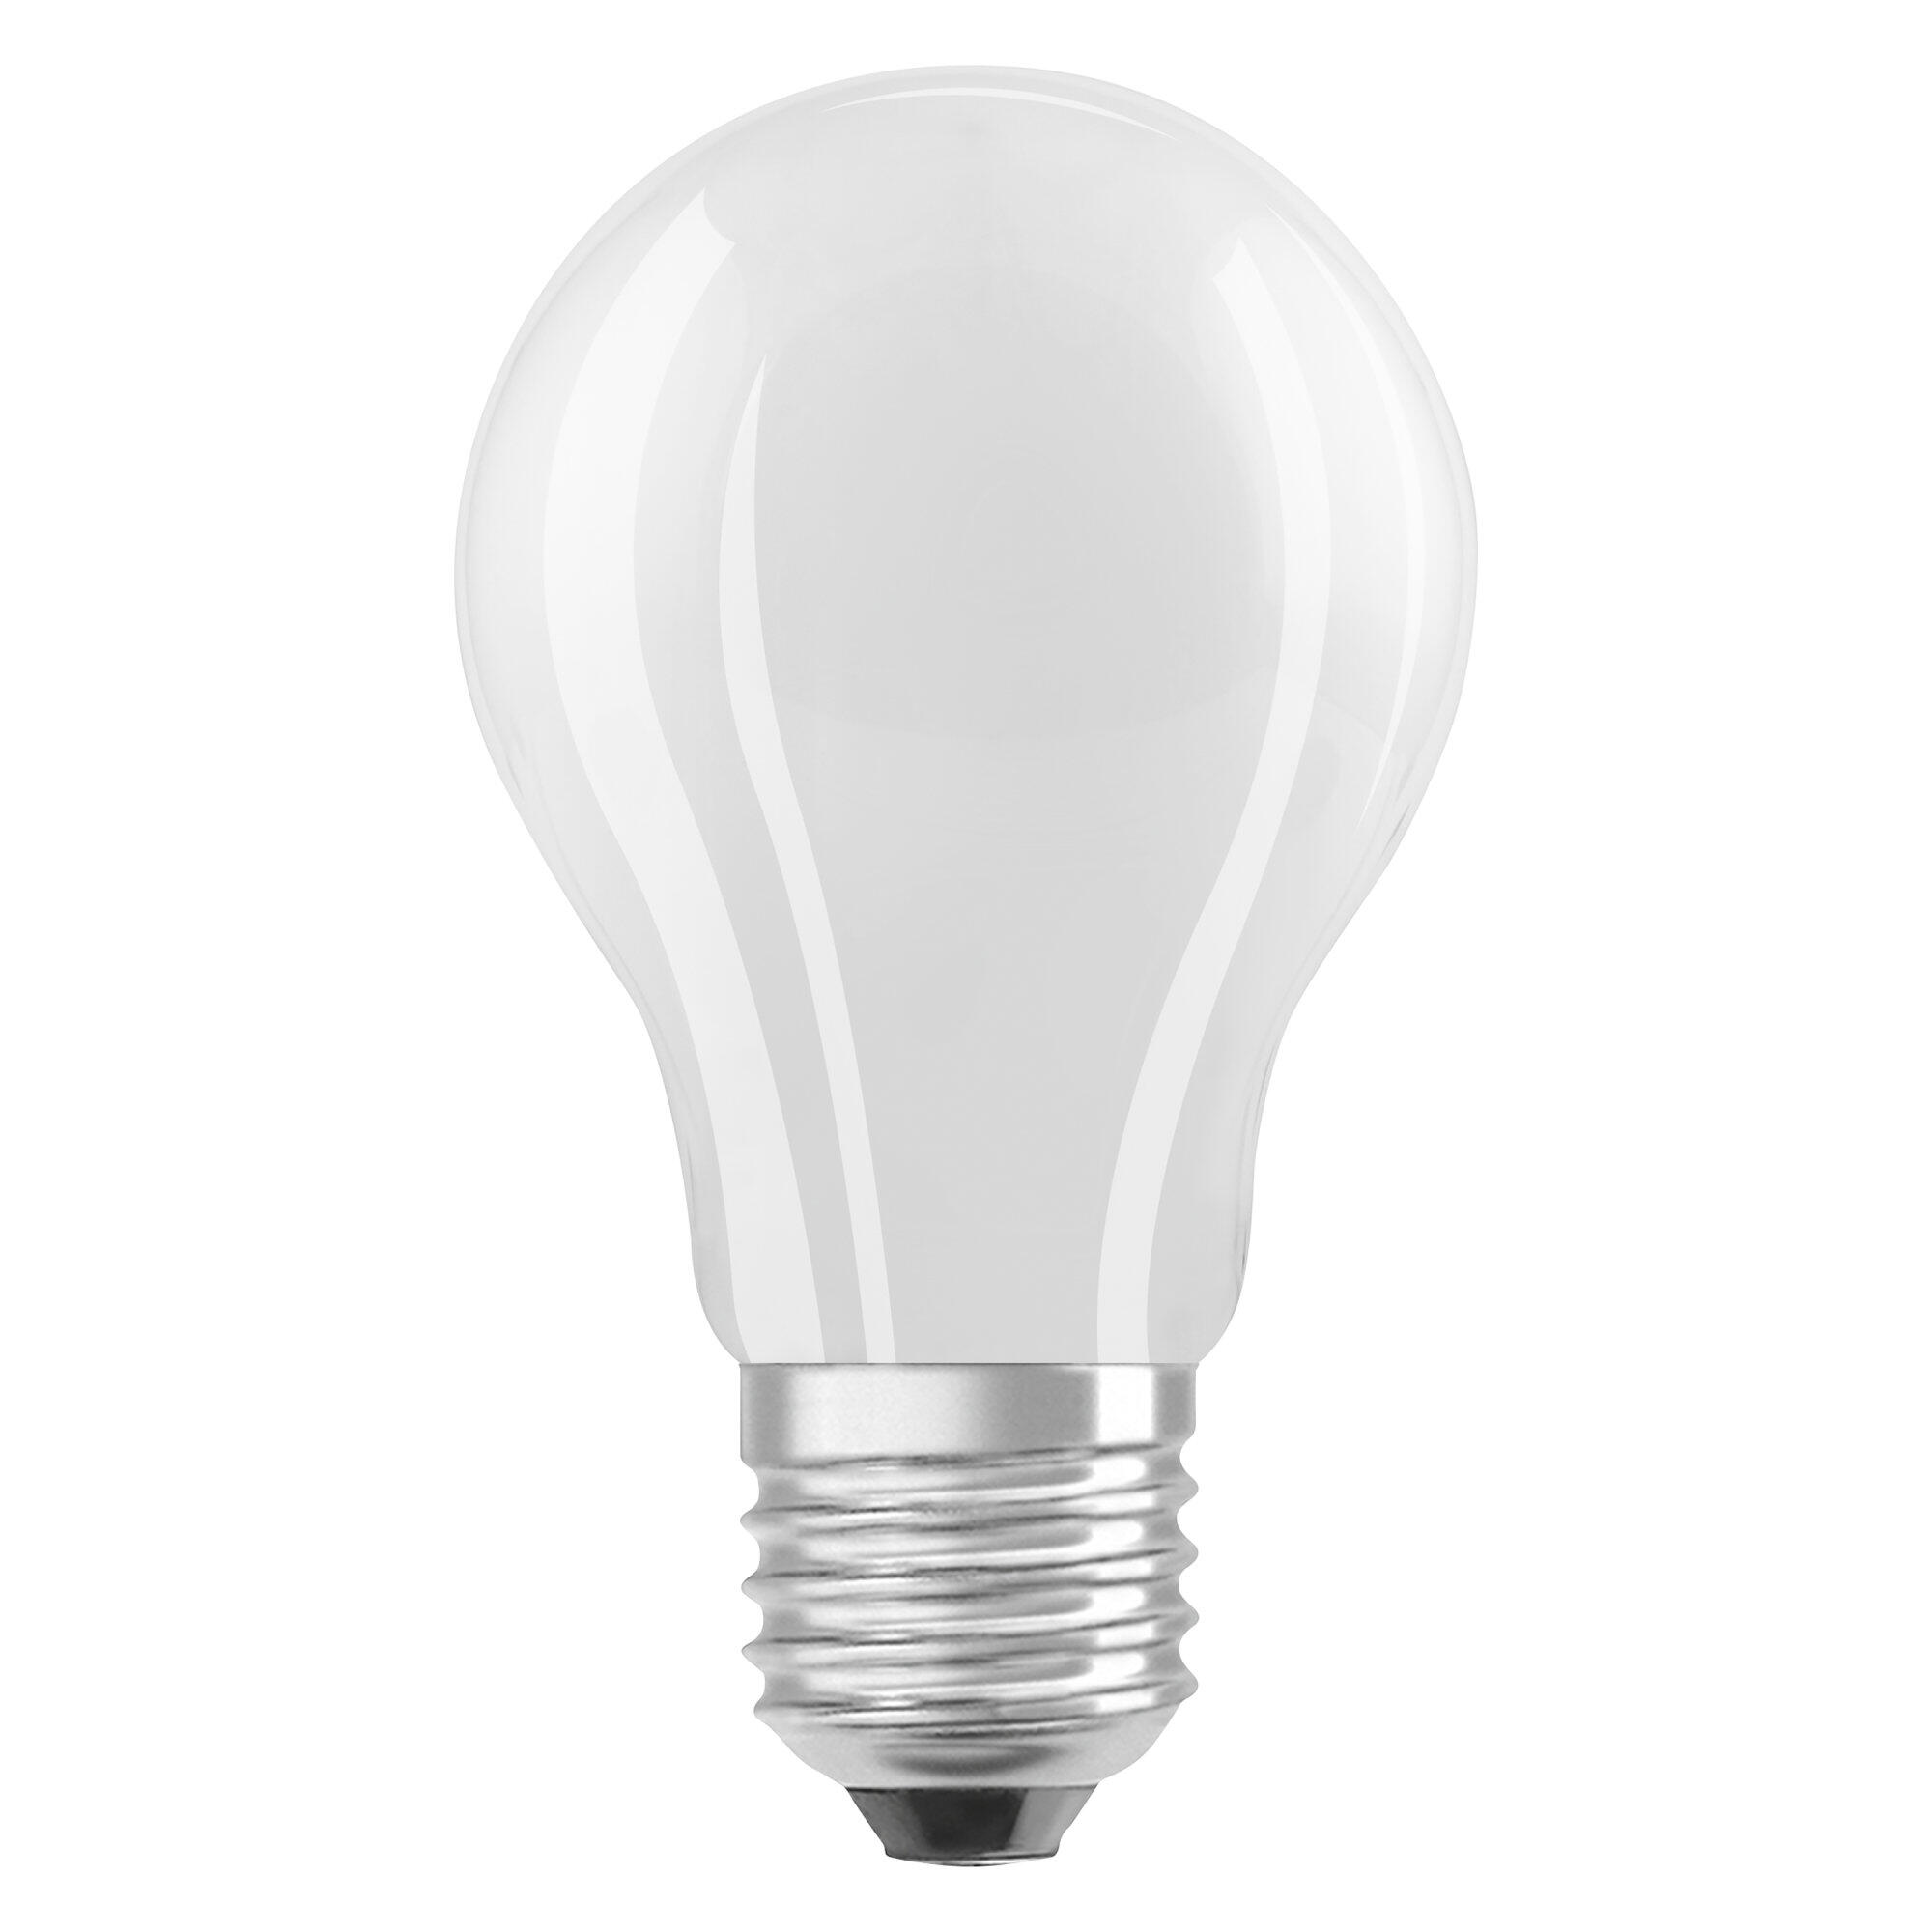 Bombilla LED regulable de 100 W, 120 W, equivalente a incandescente,  A19/A60, 12 W, 1521 LM, bombillas Edison estándar E26, bombillas  decorativas de